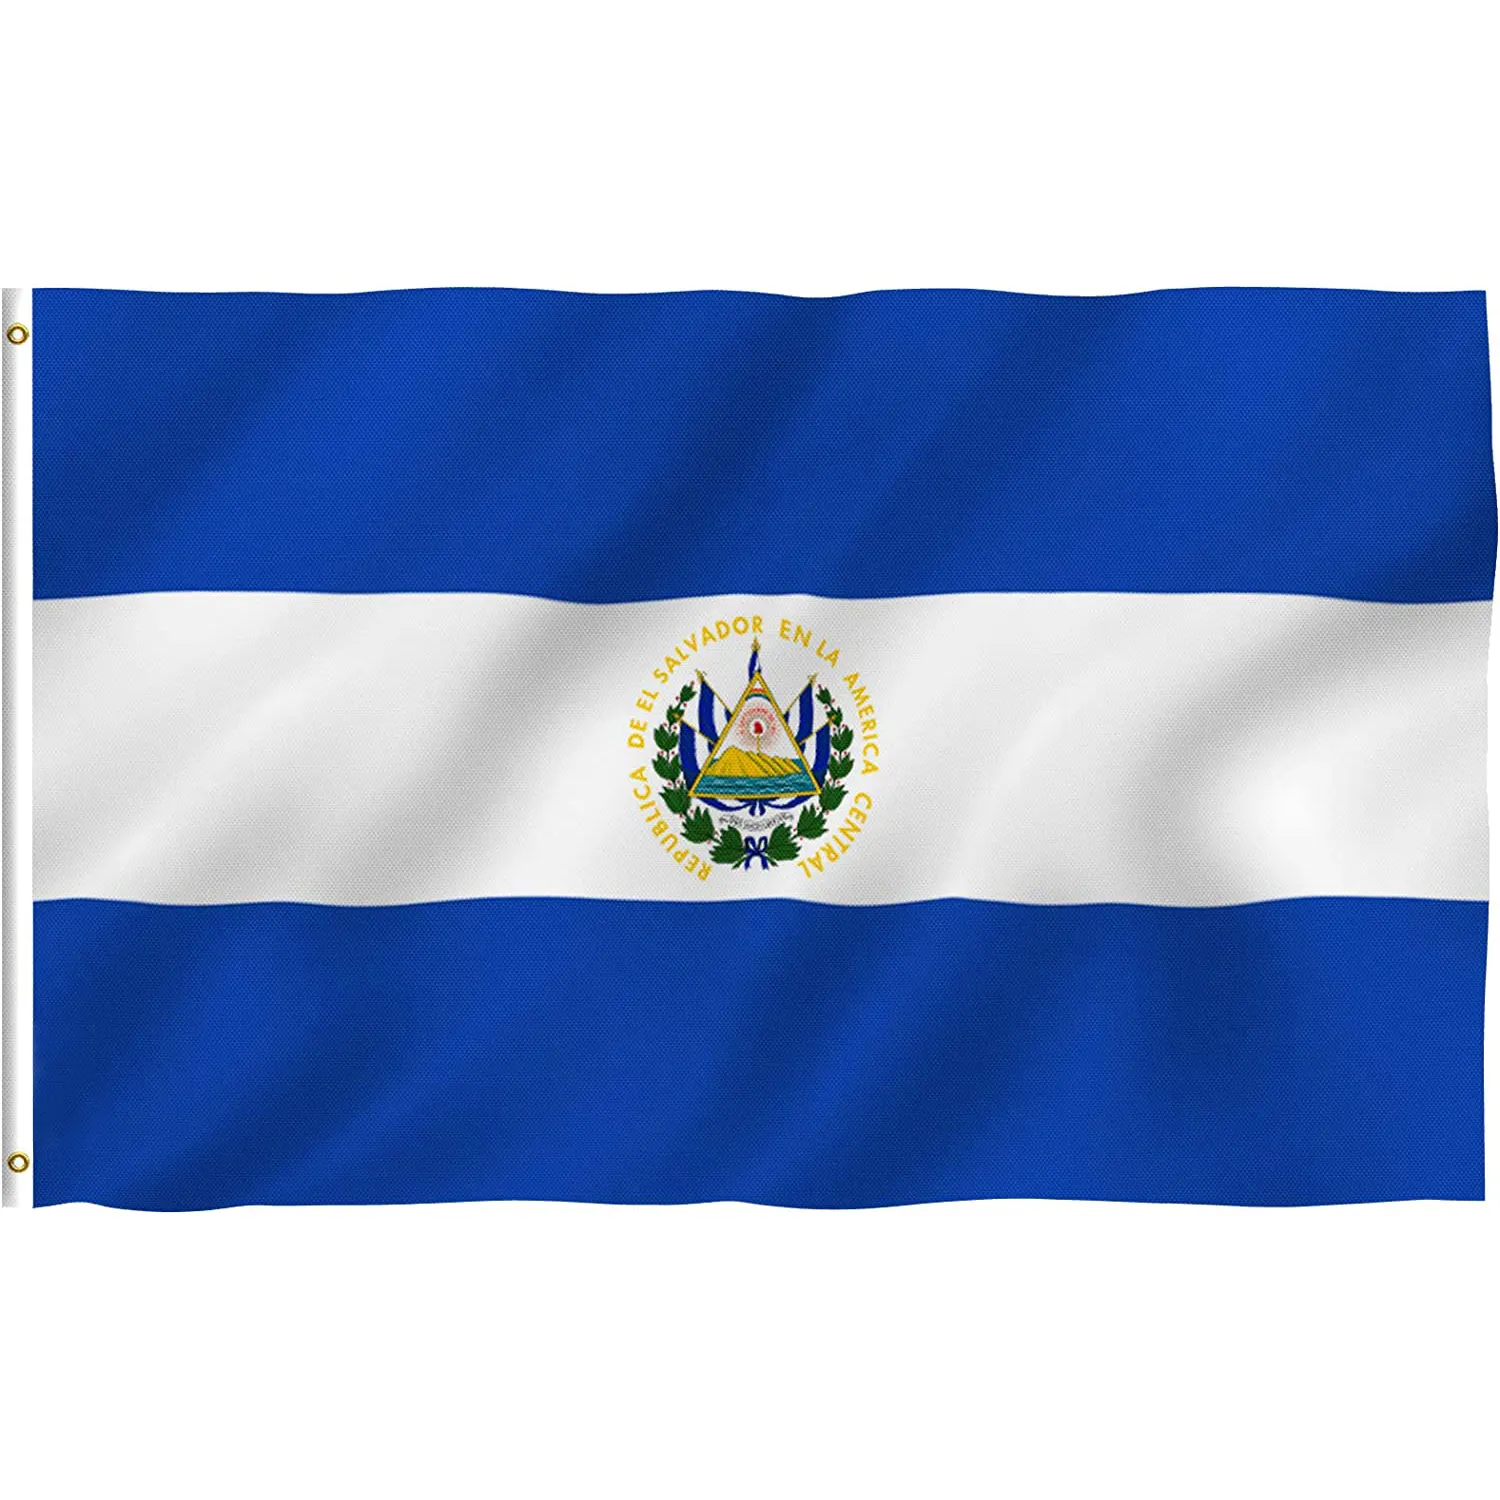 Banderas de El País, Impresión de doble cara, personalizado, de alta calidad, 3x5 pies